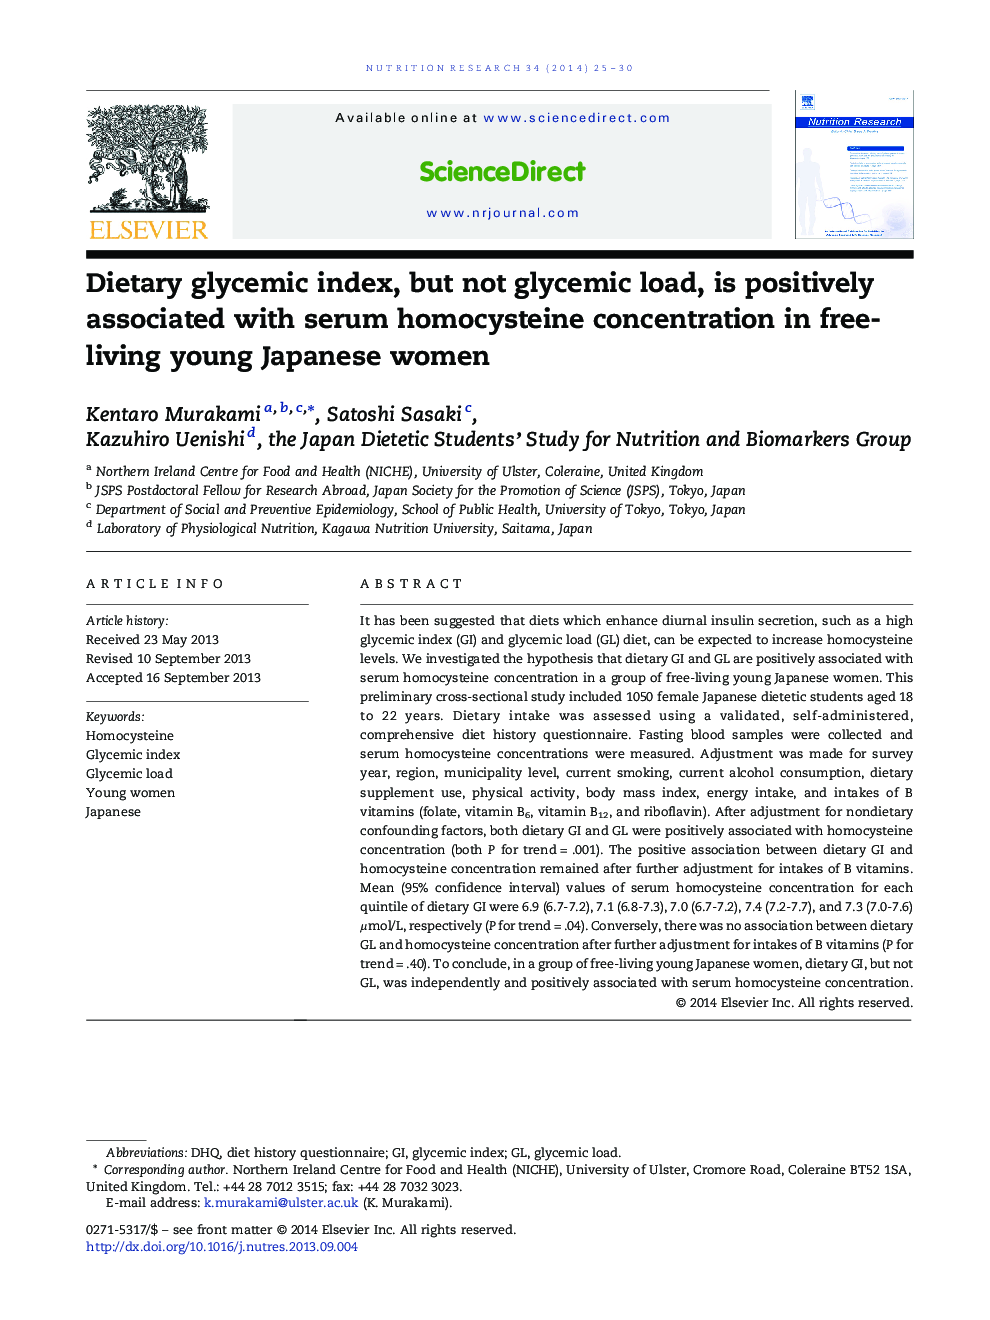 شاخص گلیسمی رژیم غذایی، اما بار گلیسمی نیست، با غلظت سرمی هوموسیستین در زنان جوان ژاپنی آزاد در ارتباط است 